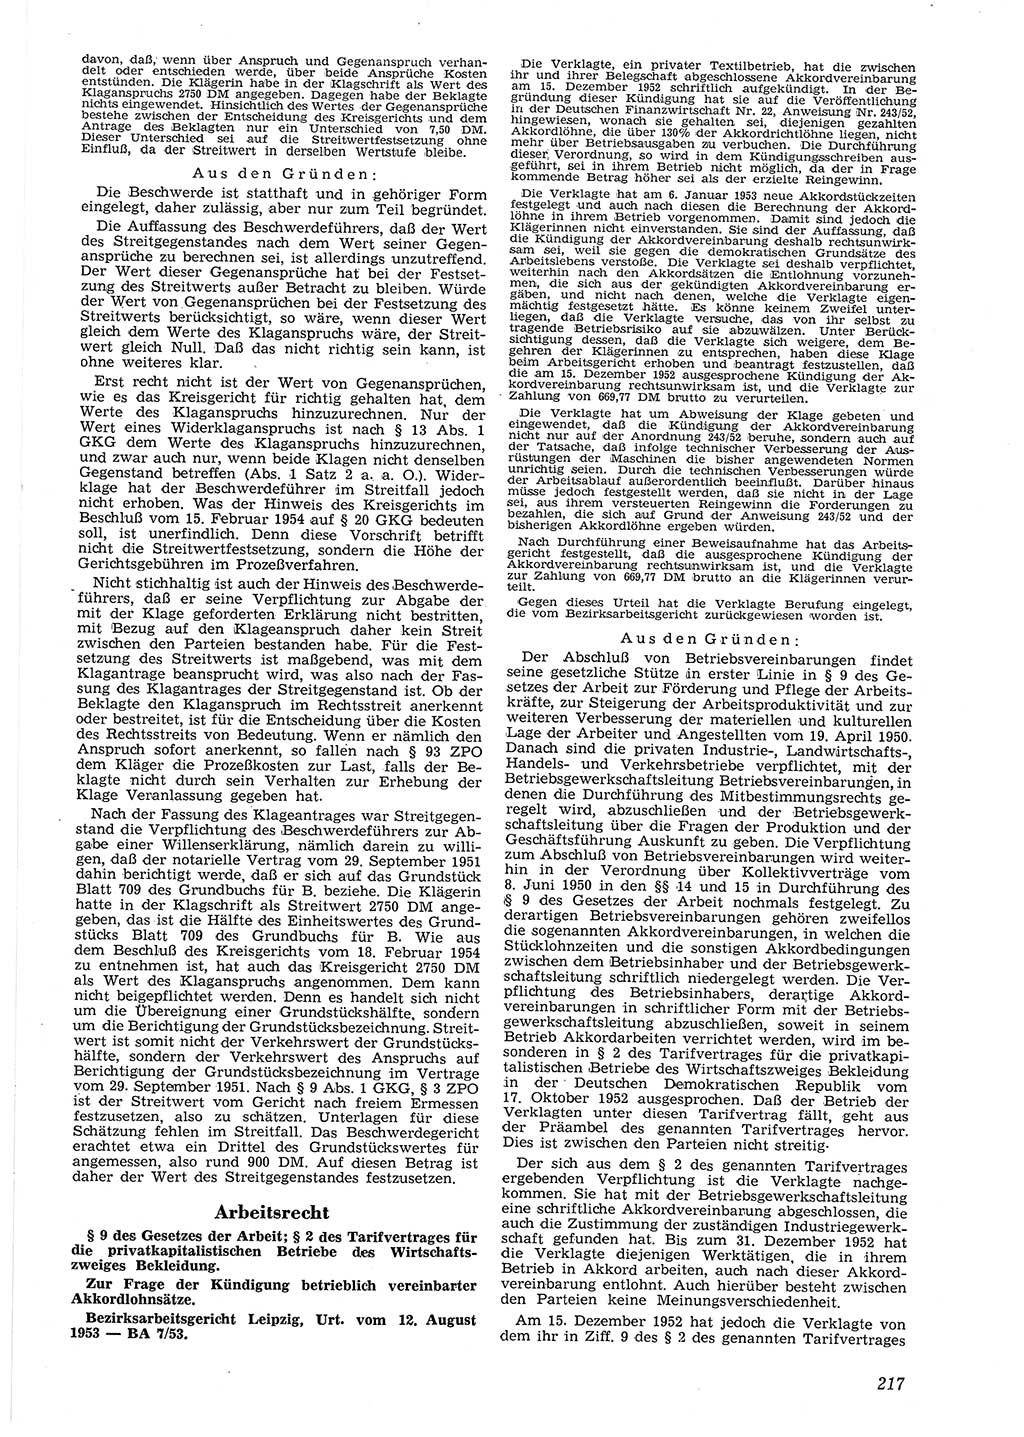 Neue Justiz (NJ), Zeitschrift für Recht und Rechtswissenschaft [Deutsche Demokratische Republik (DDR)], 8. Jahrgang 1954, Seite 217 (NJ DDR 1954, S. 217)